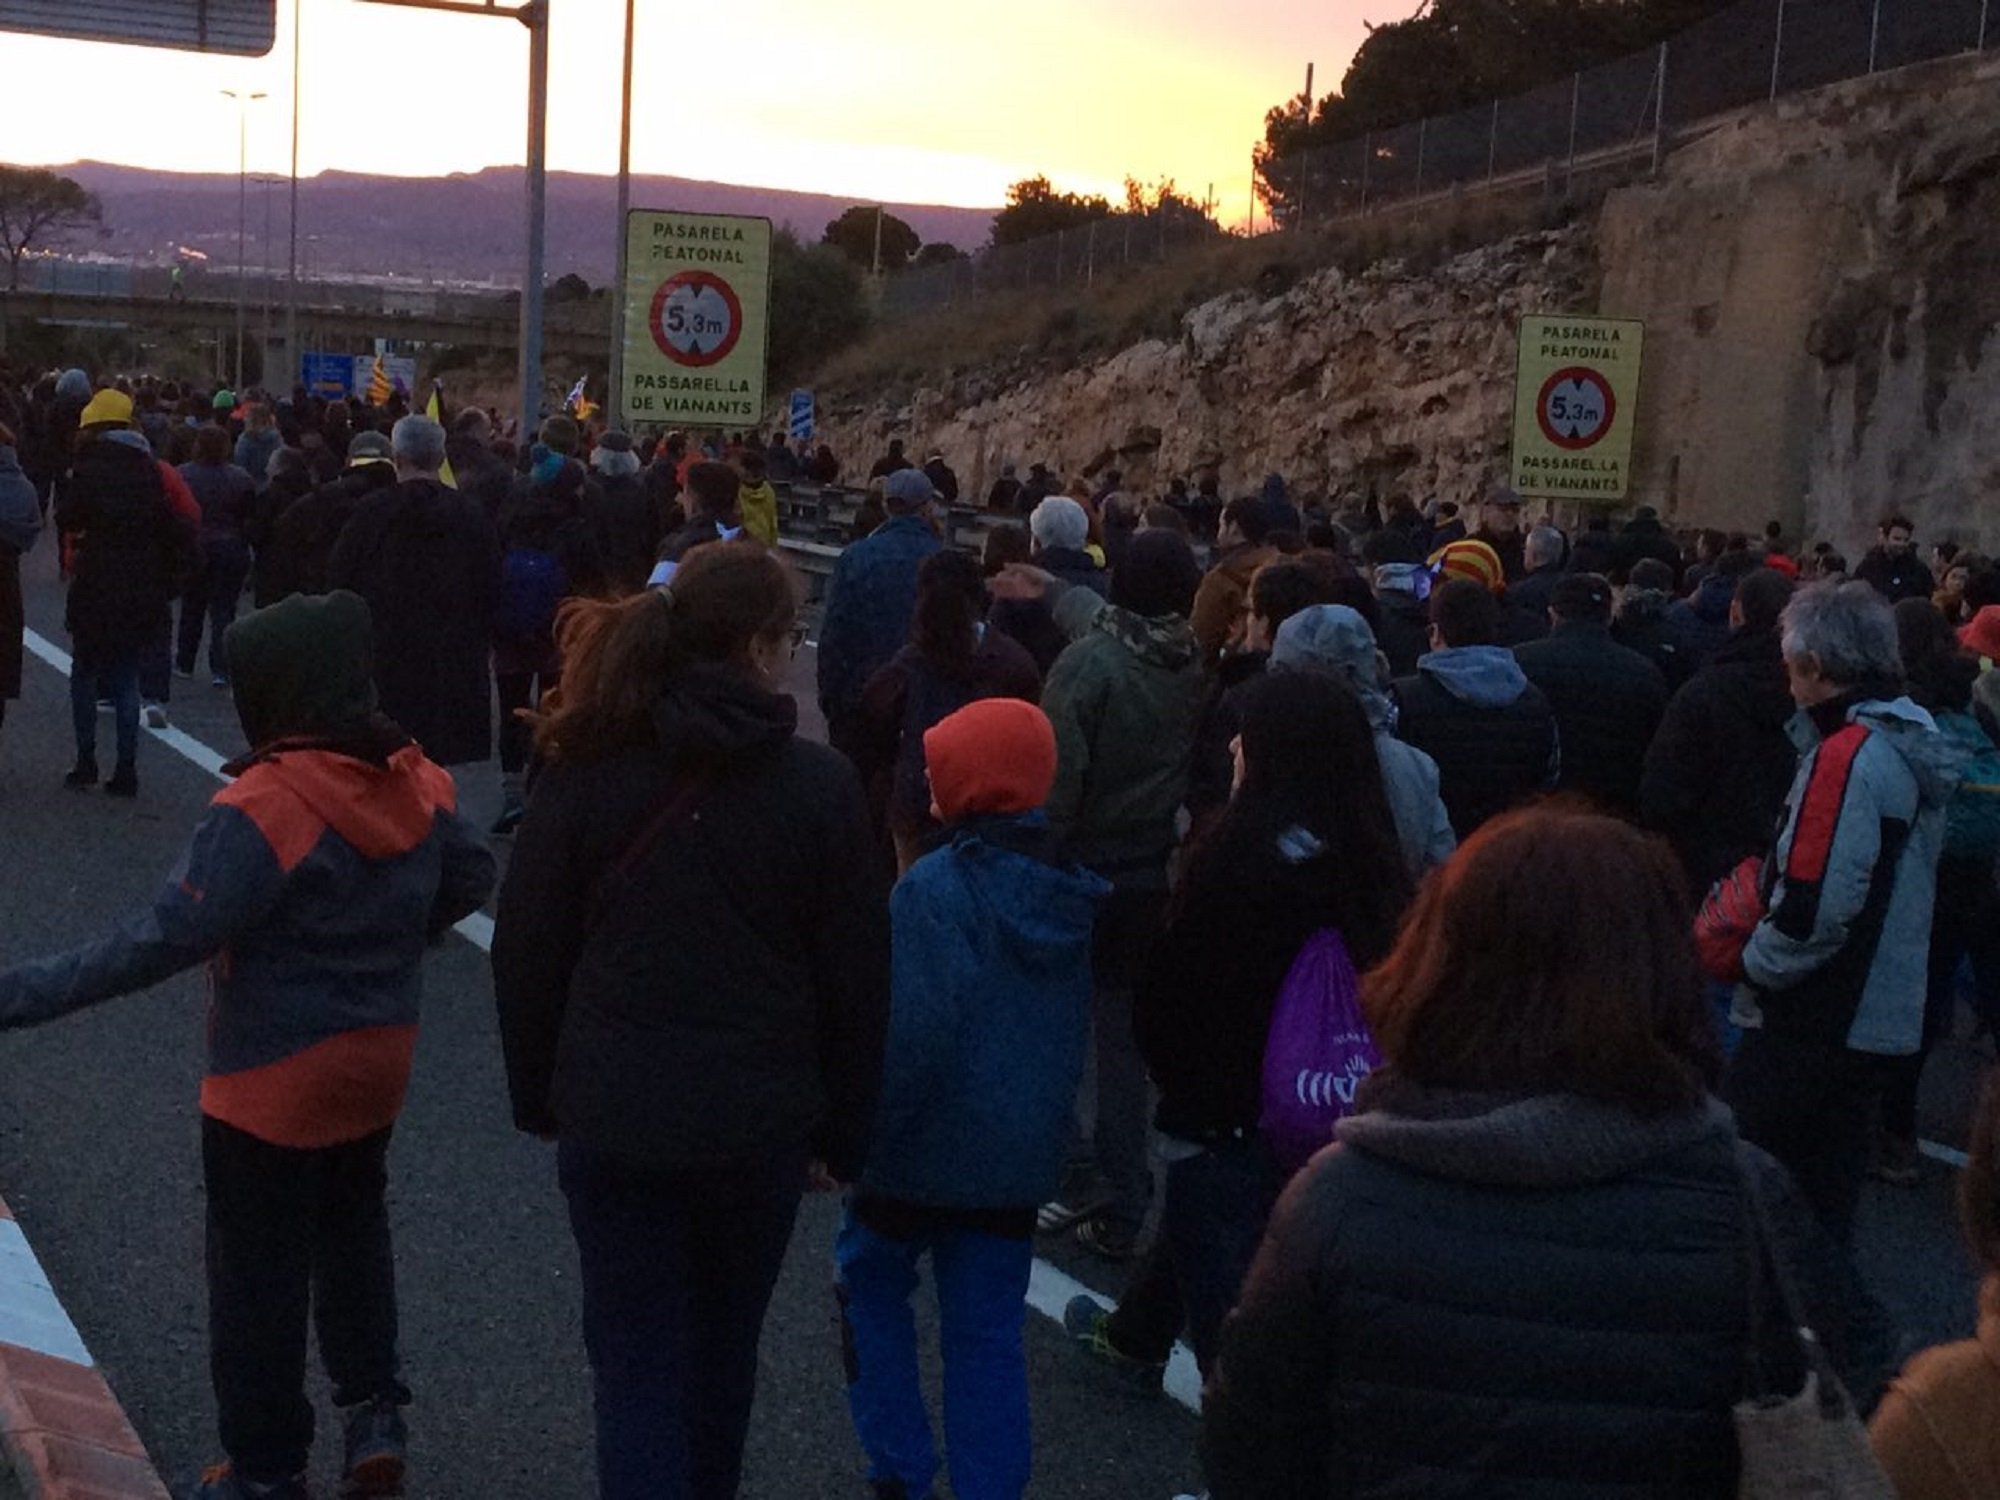 Los CDR de Tarragona cortan la A-7 pidiendo la libertad de los presos